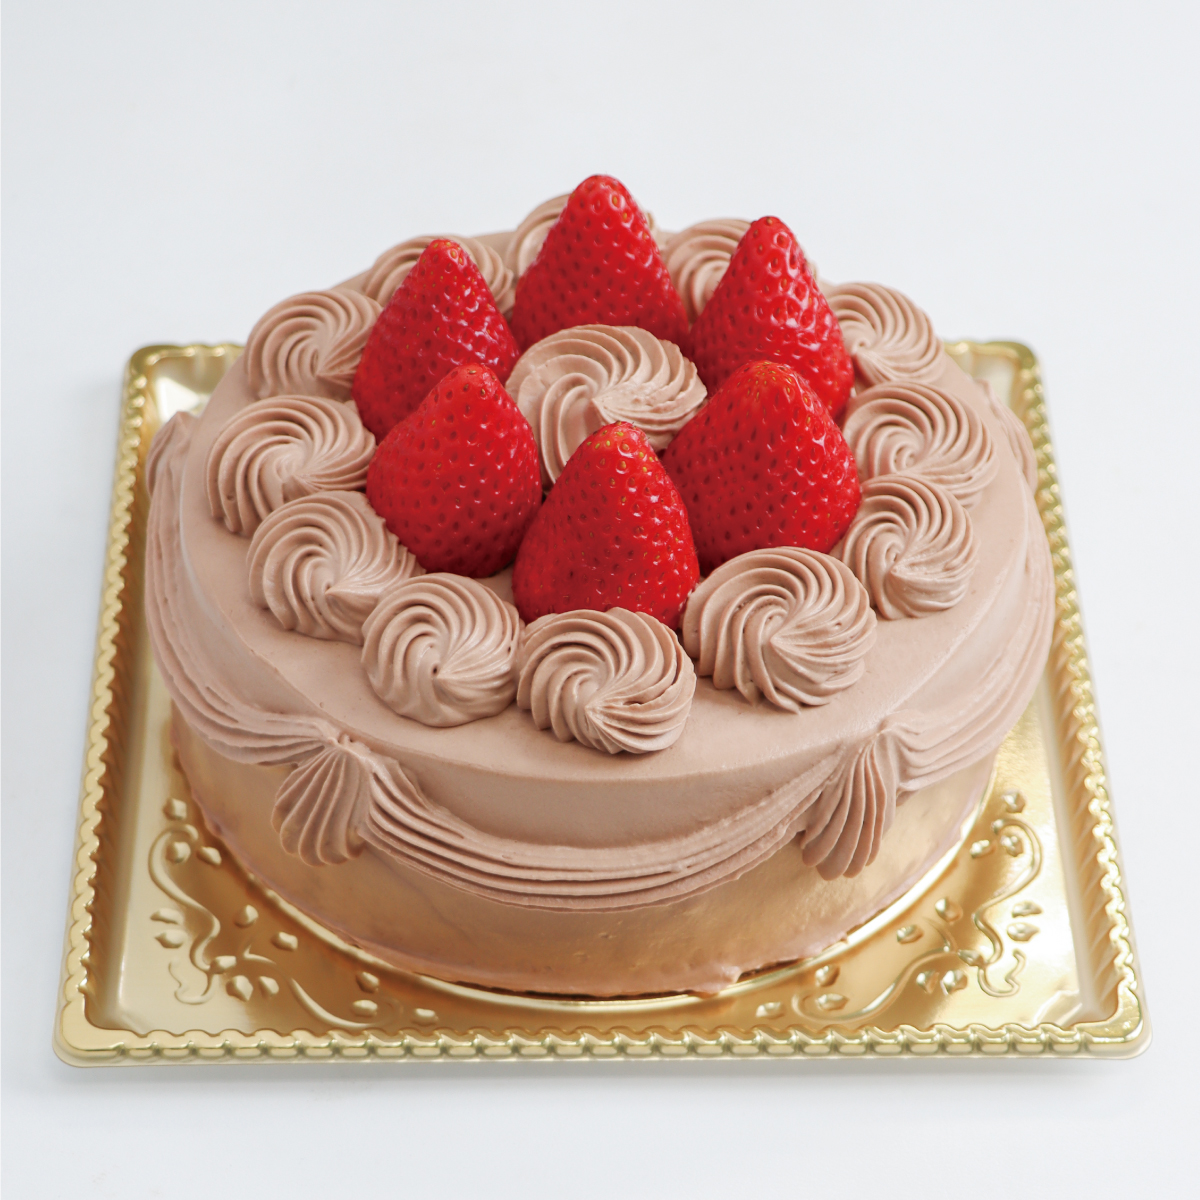 チョコデコレーションケーキ<12cm>